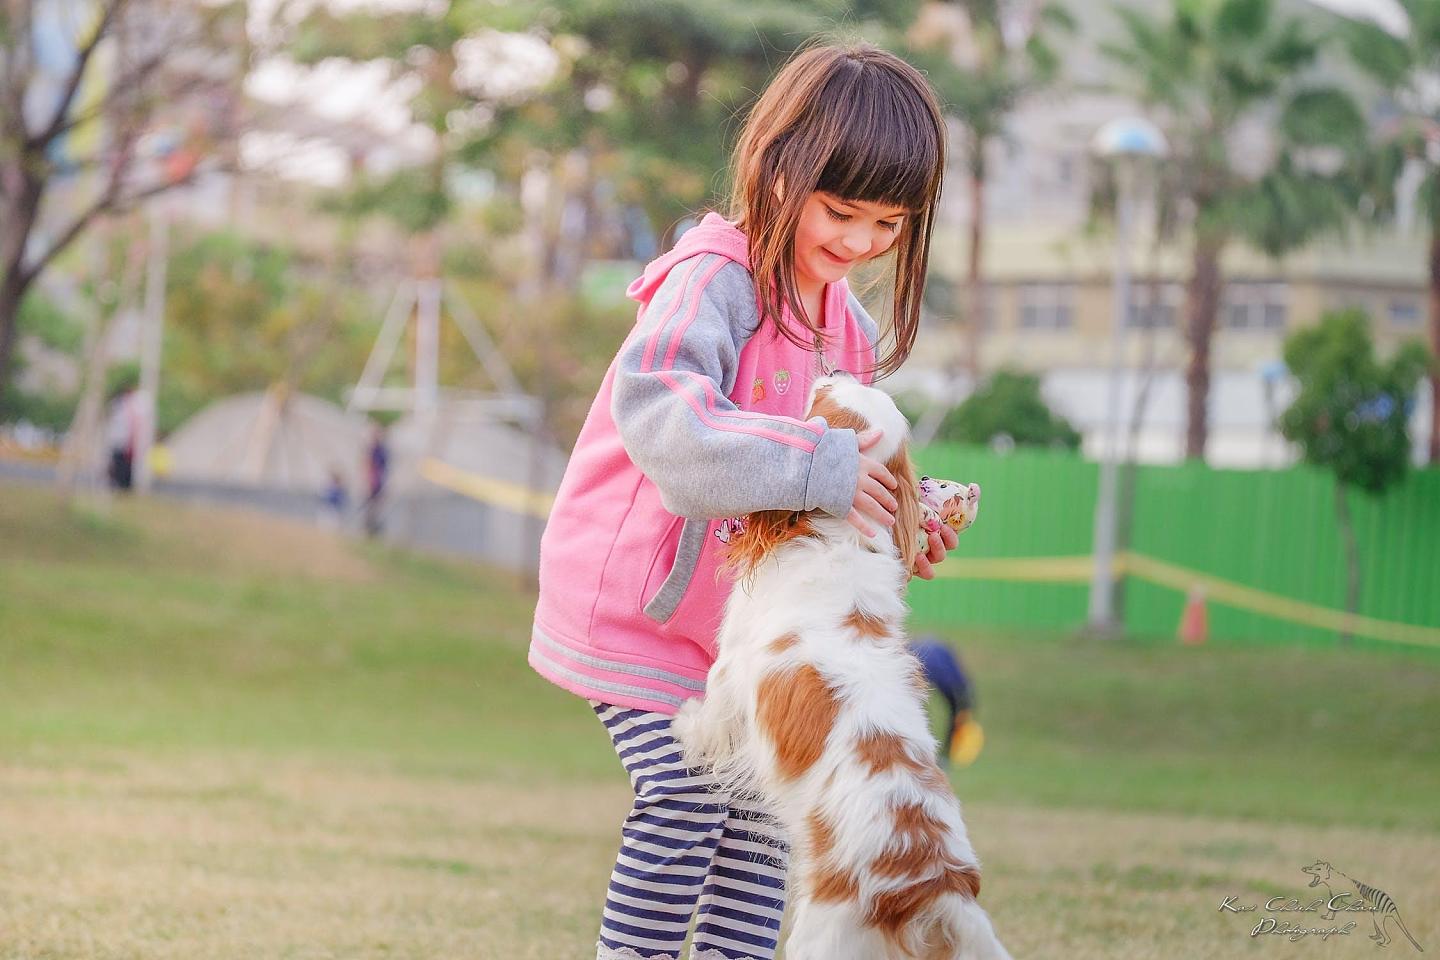 从小就受教育要爱护动物，怎么长大了就高喊“禁止养狗”了？